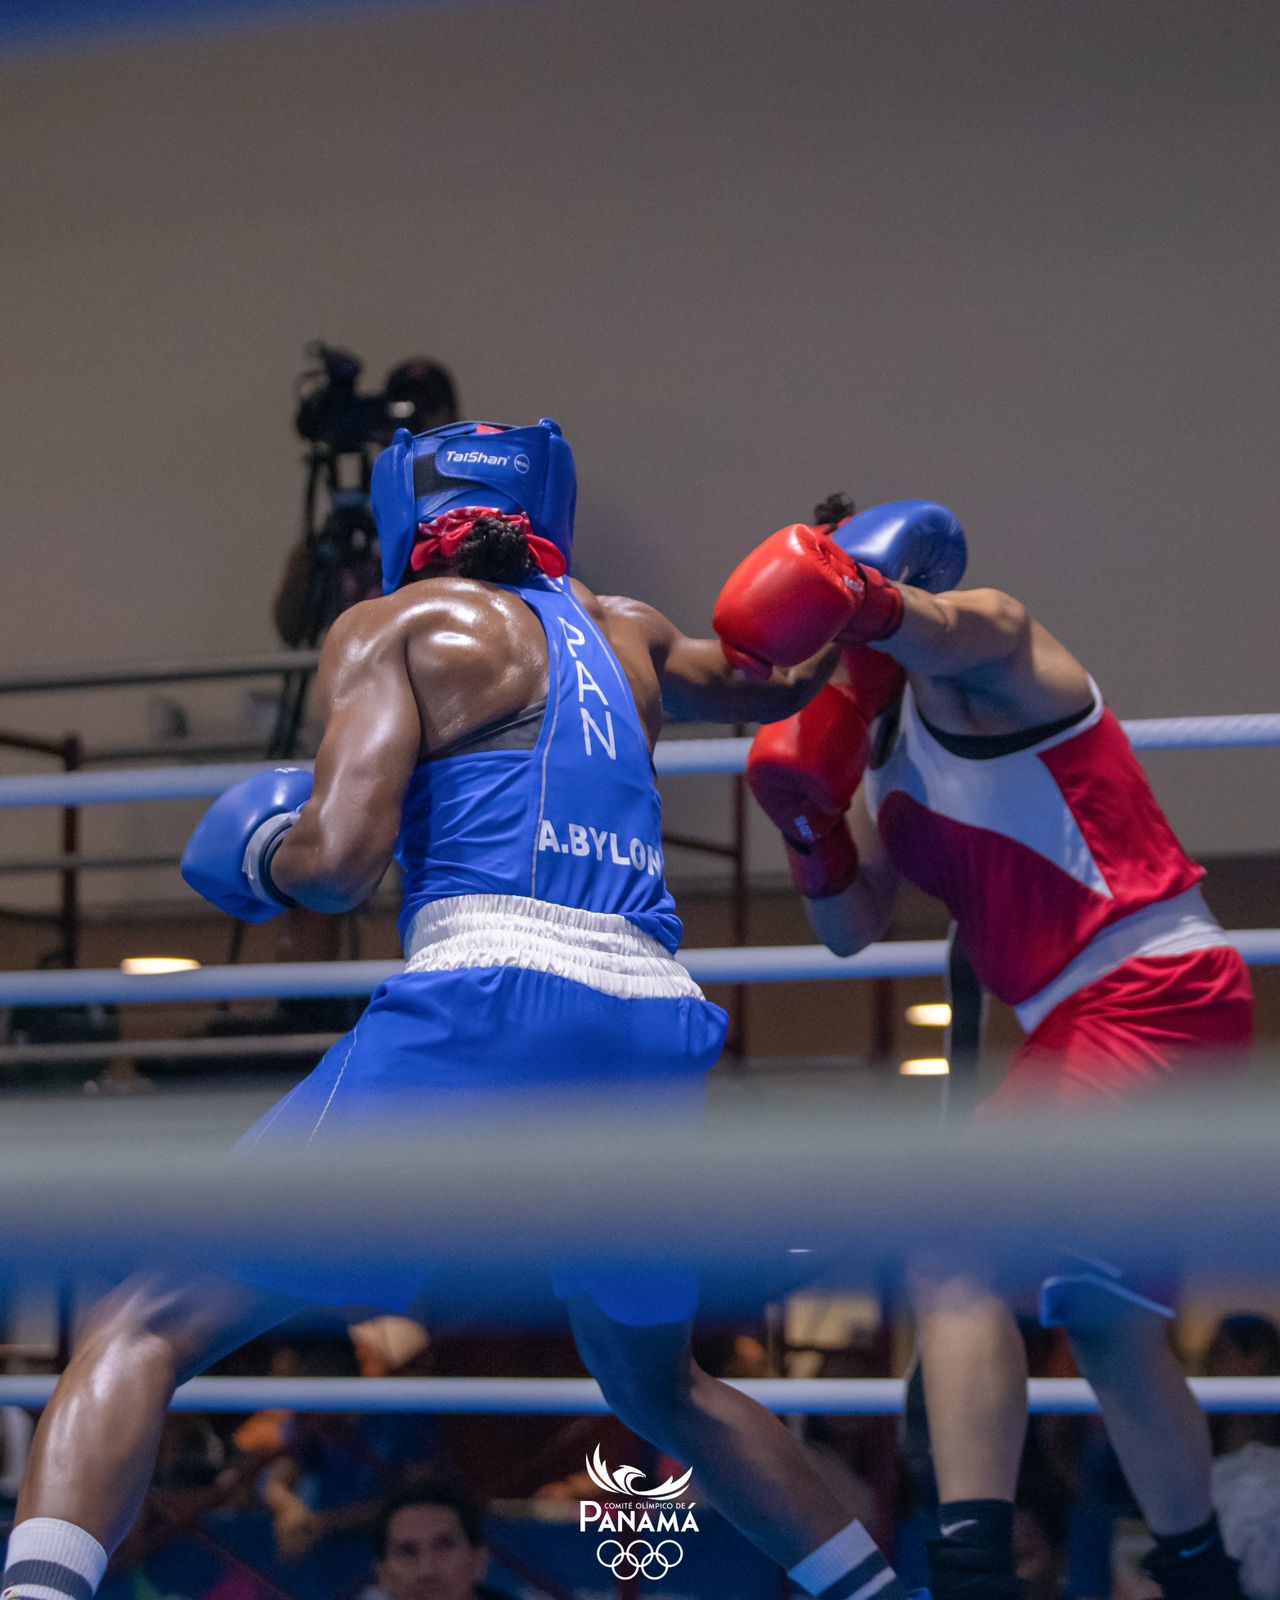 Boxeo panameño inicia con triunfo de Atheyna Bylon